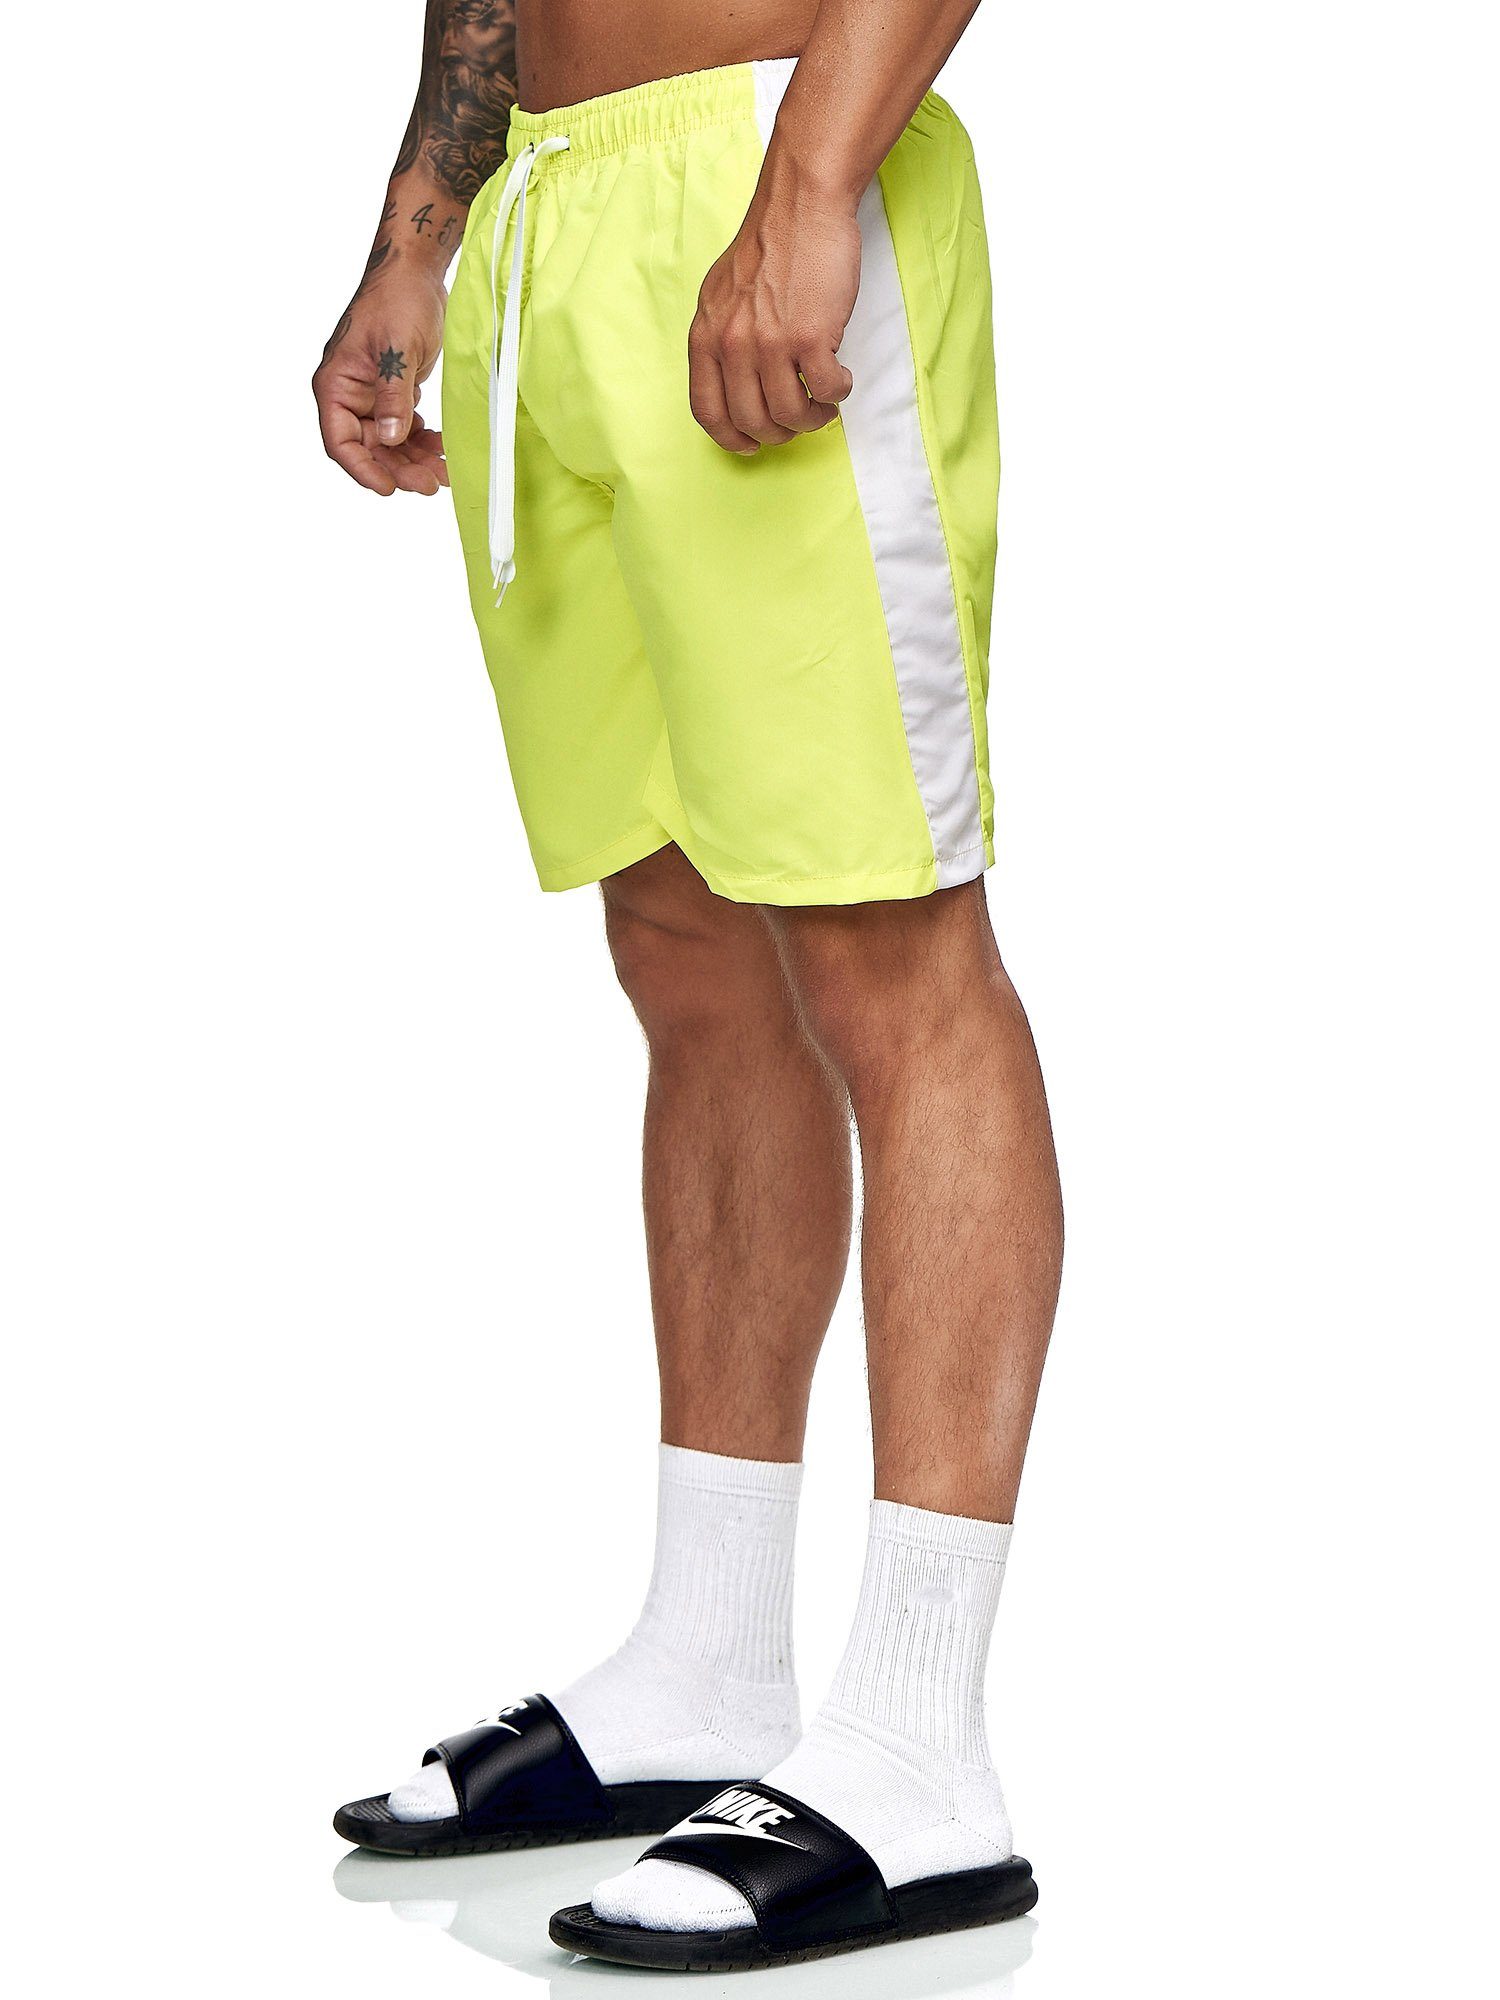 Weiss 400 Casual OneRedox Gelb modischem Hose Sweatpants, BH200 Freizeit im Fitness (Kurze Bermudas 1-tlg., Shorts Design)